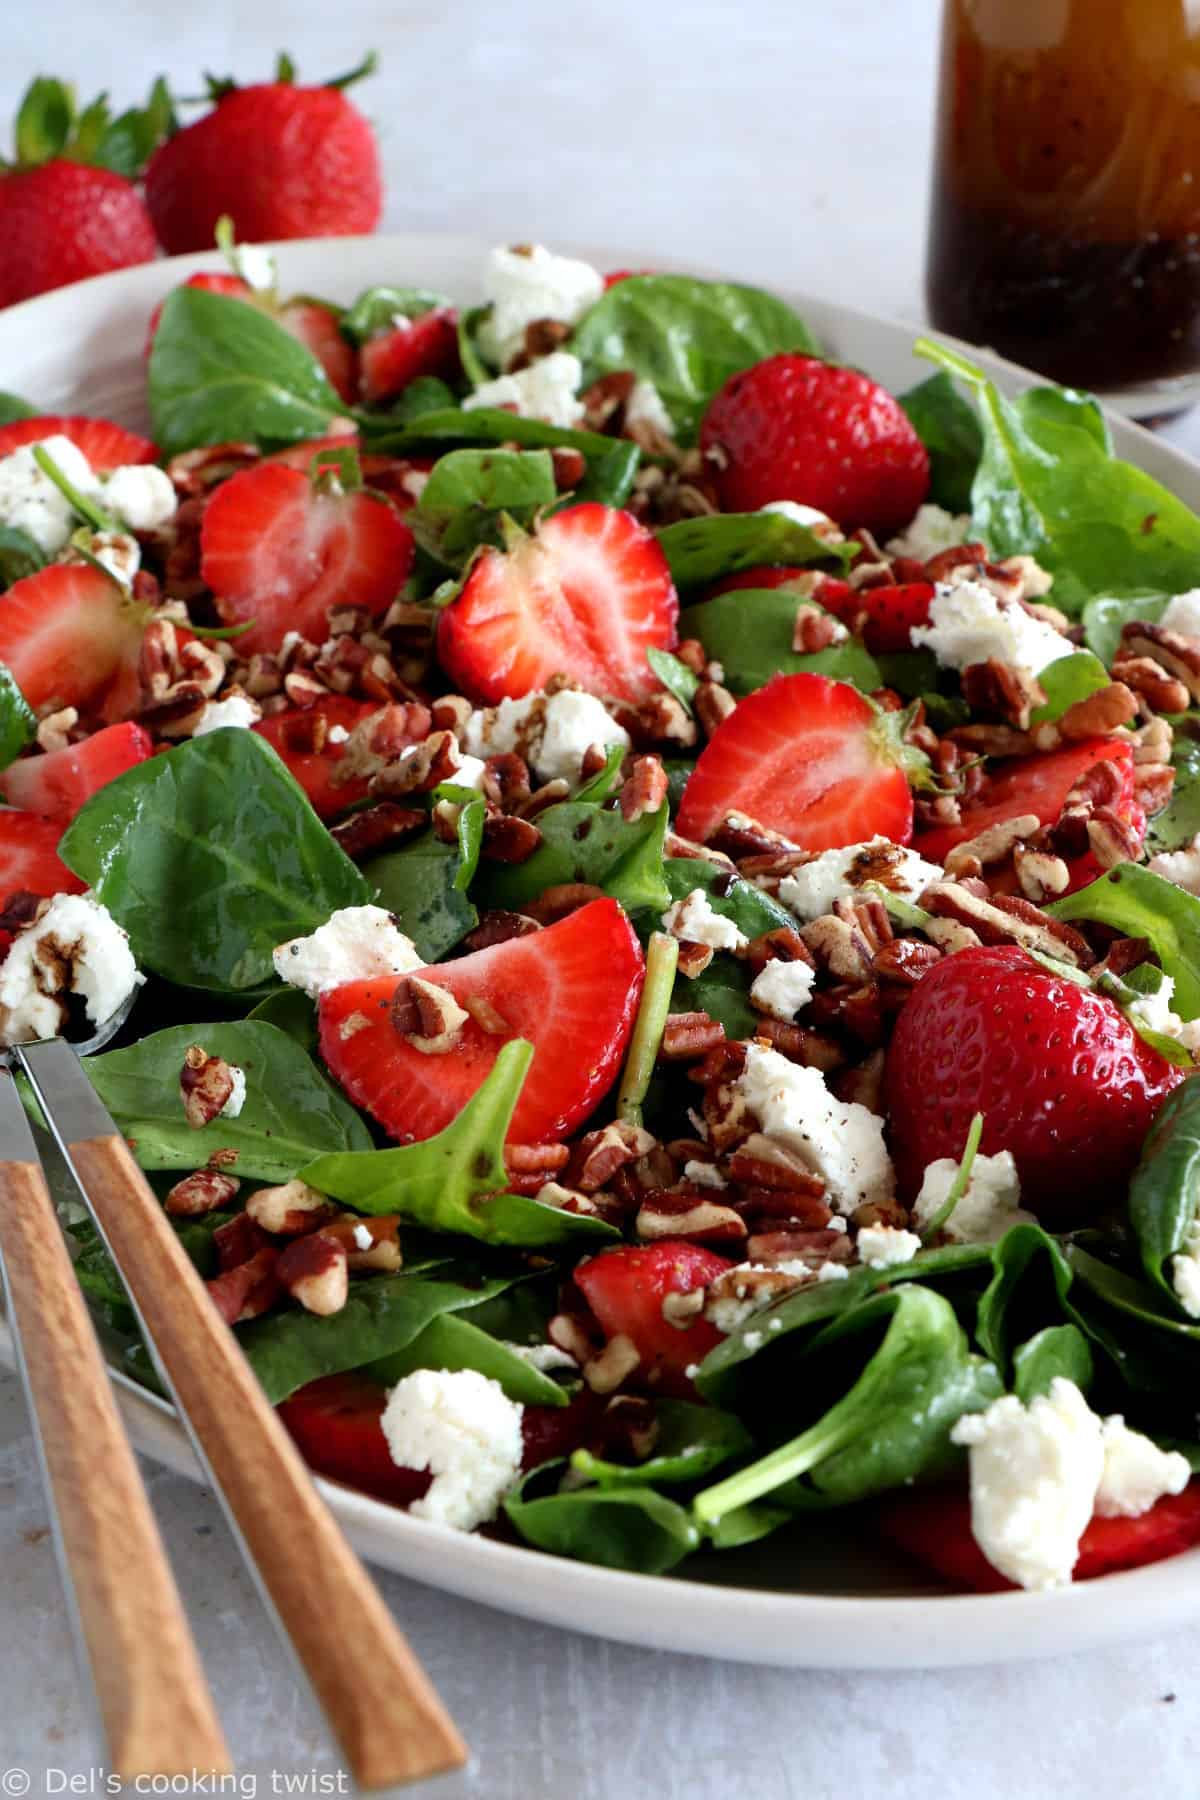 Délicieuse salade d'épinards, fraises et chèvre frais, accompagnée d'une vinaigrette au vinaigre balsamique et aux graines de pavot .